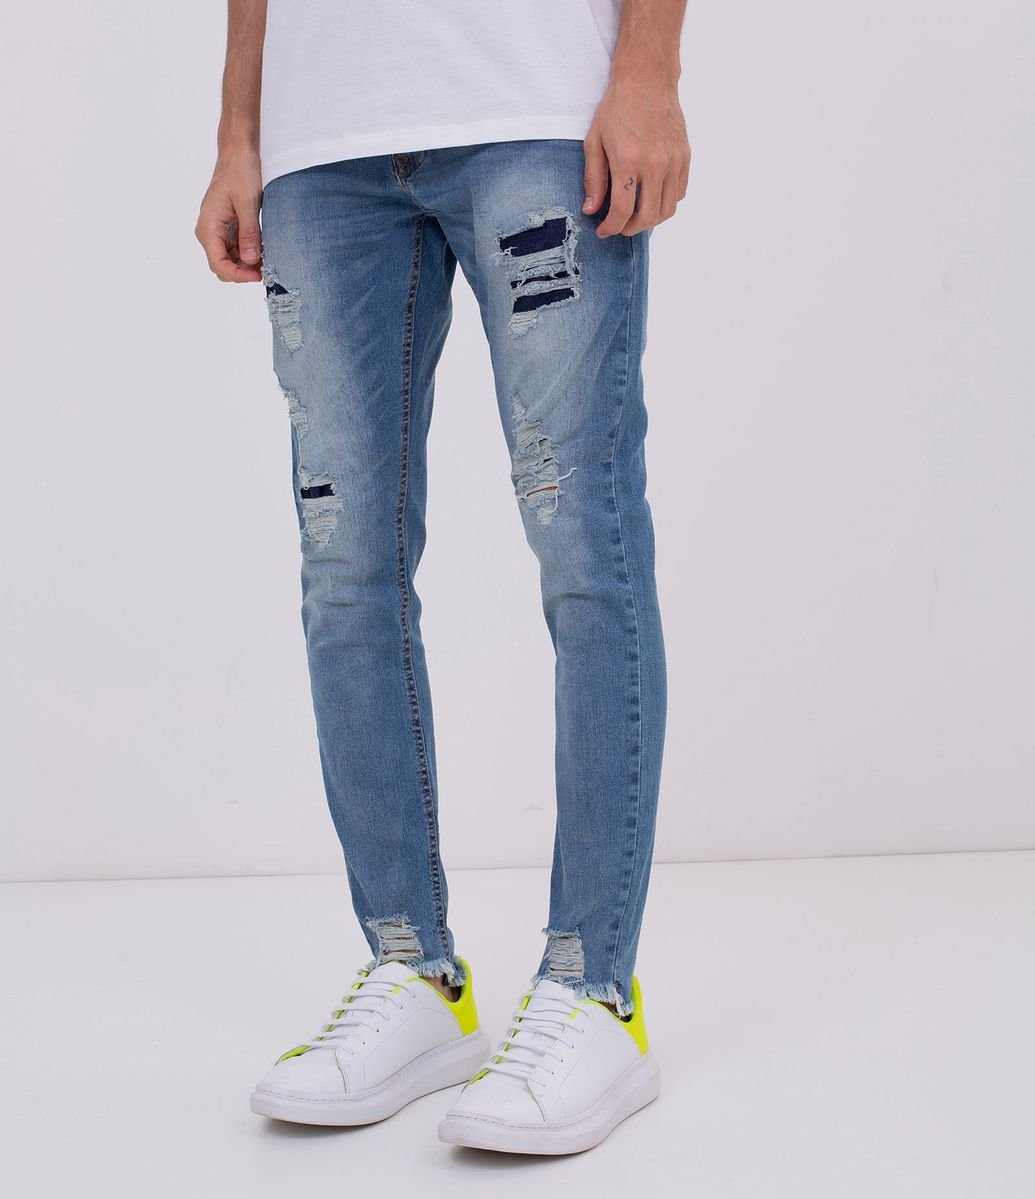 revenda calça jeans